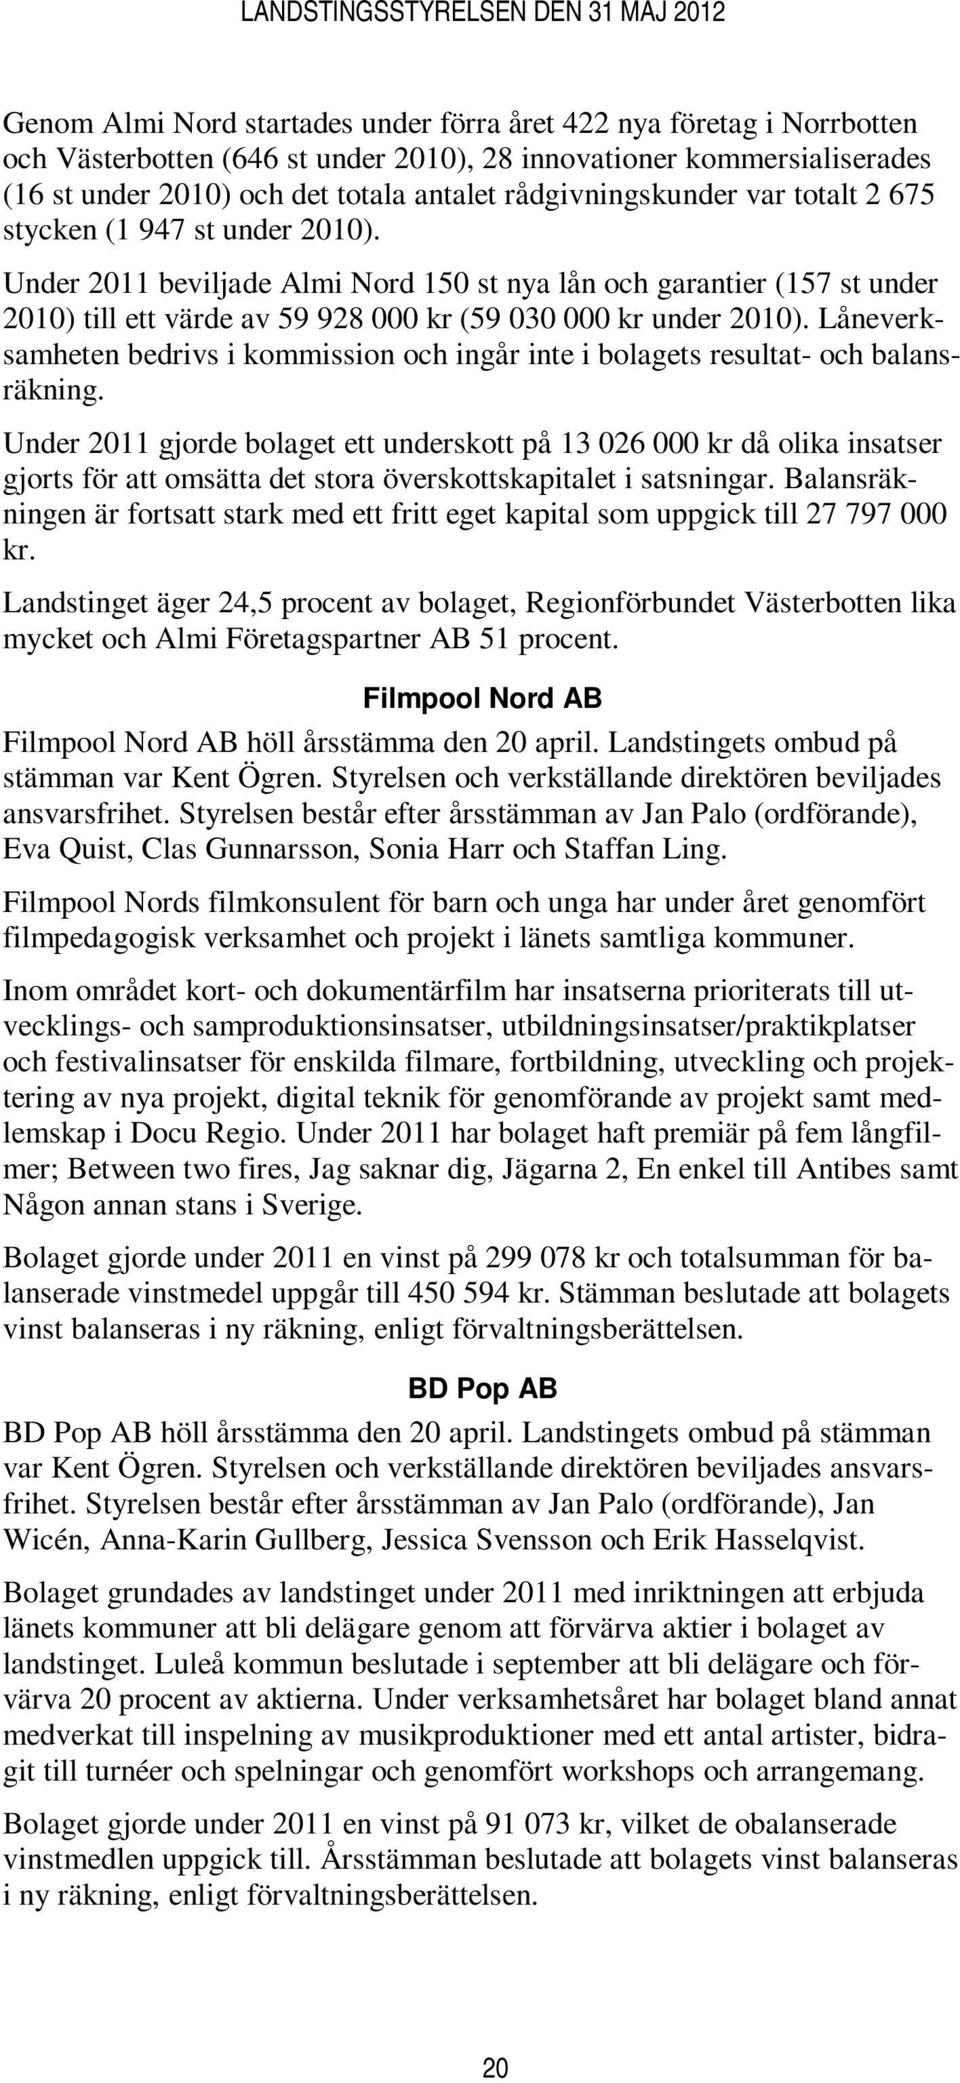 Under 2011 beviljade Almi Nord 150 st nya lån och garantier (157 st under 2010) till ett värde av 59 928 000 kr (59 030 000 kr under 2010).